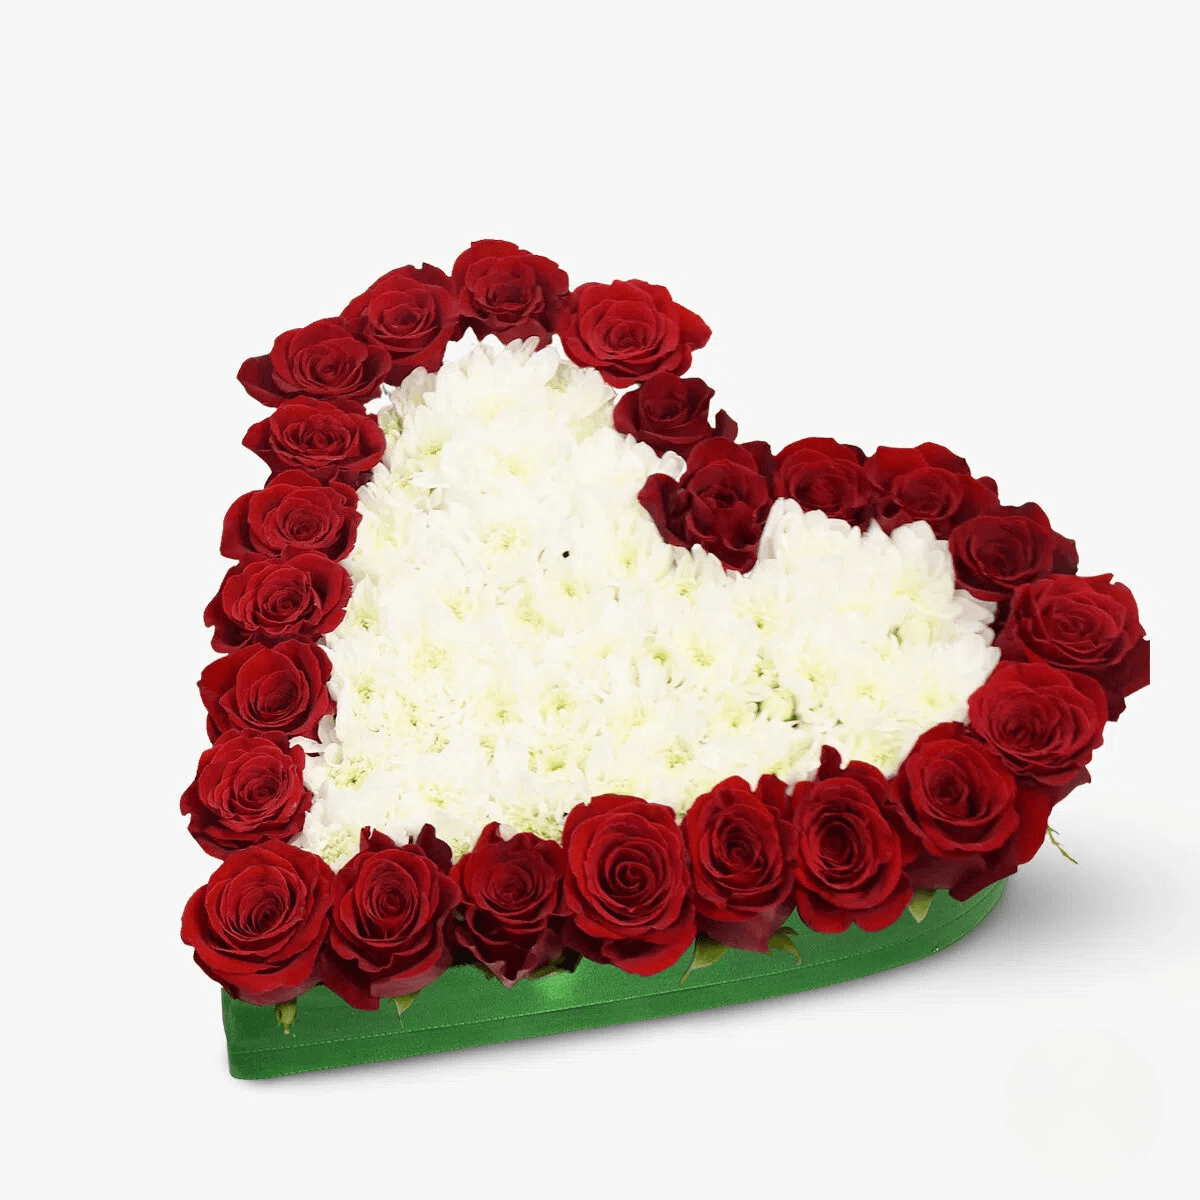 Aranjament in forma de inima cu 18 trandafiri rosii si 15 crizanteme albe – Standard albe